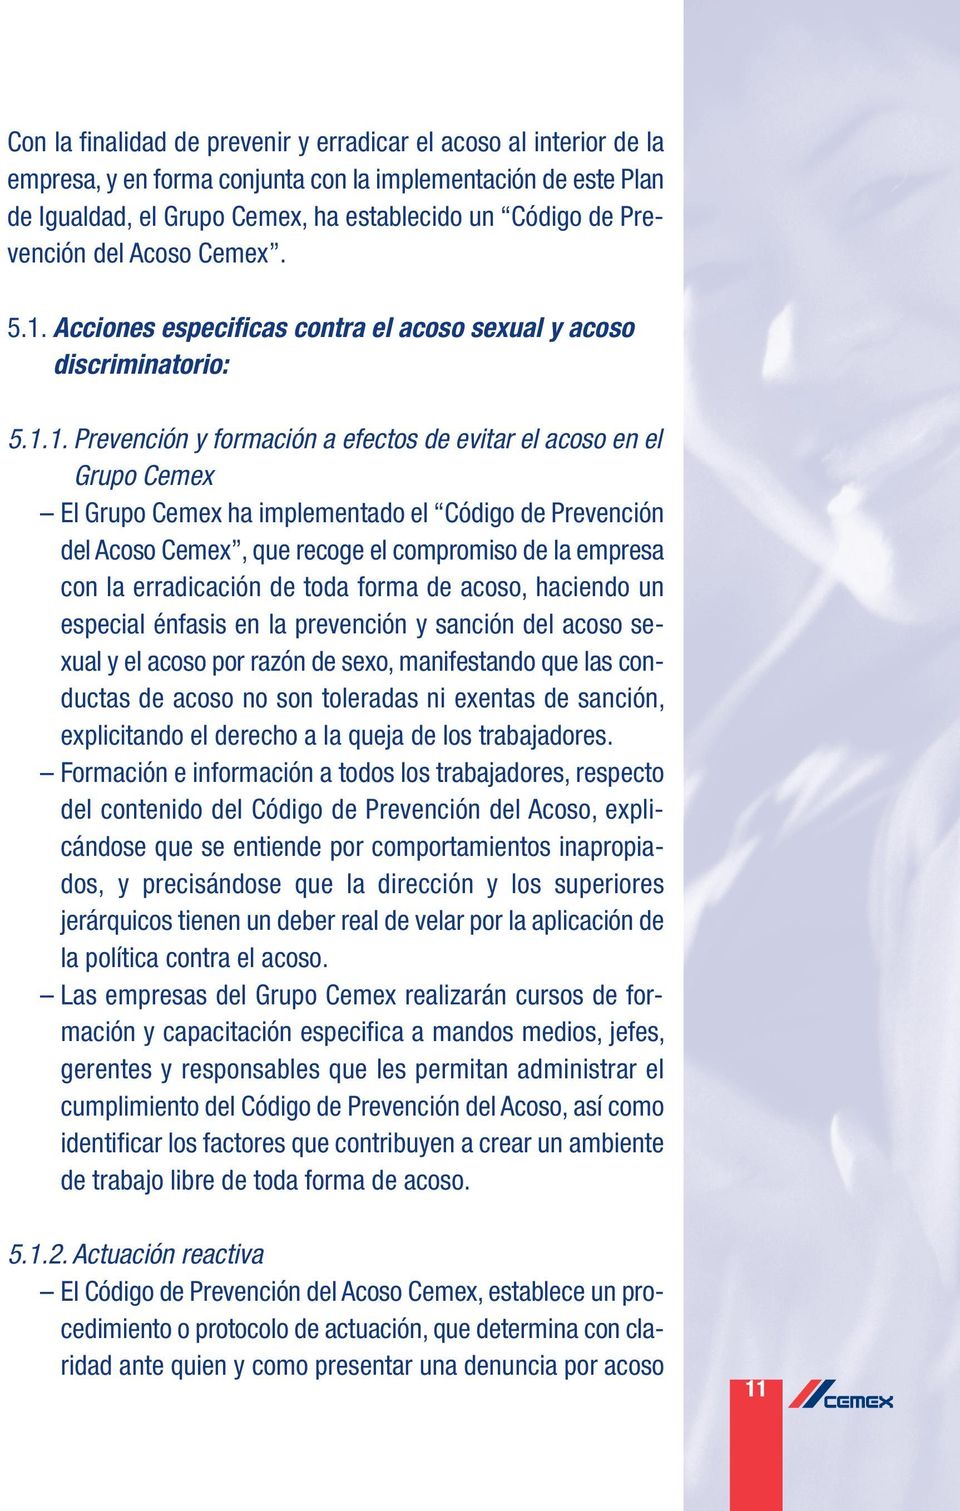 Acciones especificas contra el acoso sexual y acoso discriminatorio: 5.1.